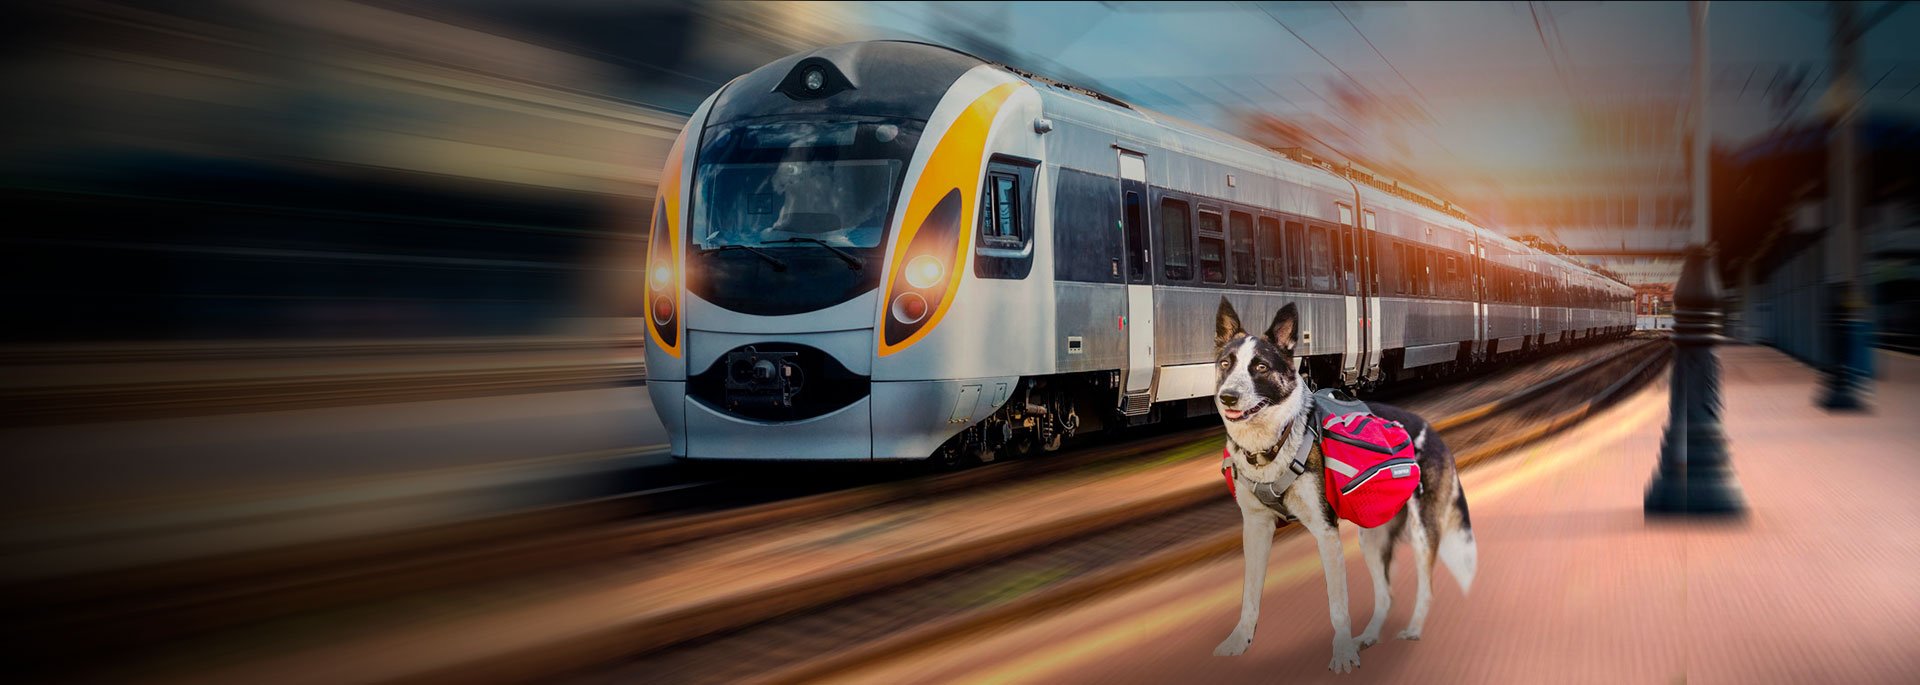 перевозка животных в поезде